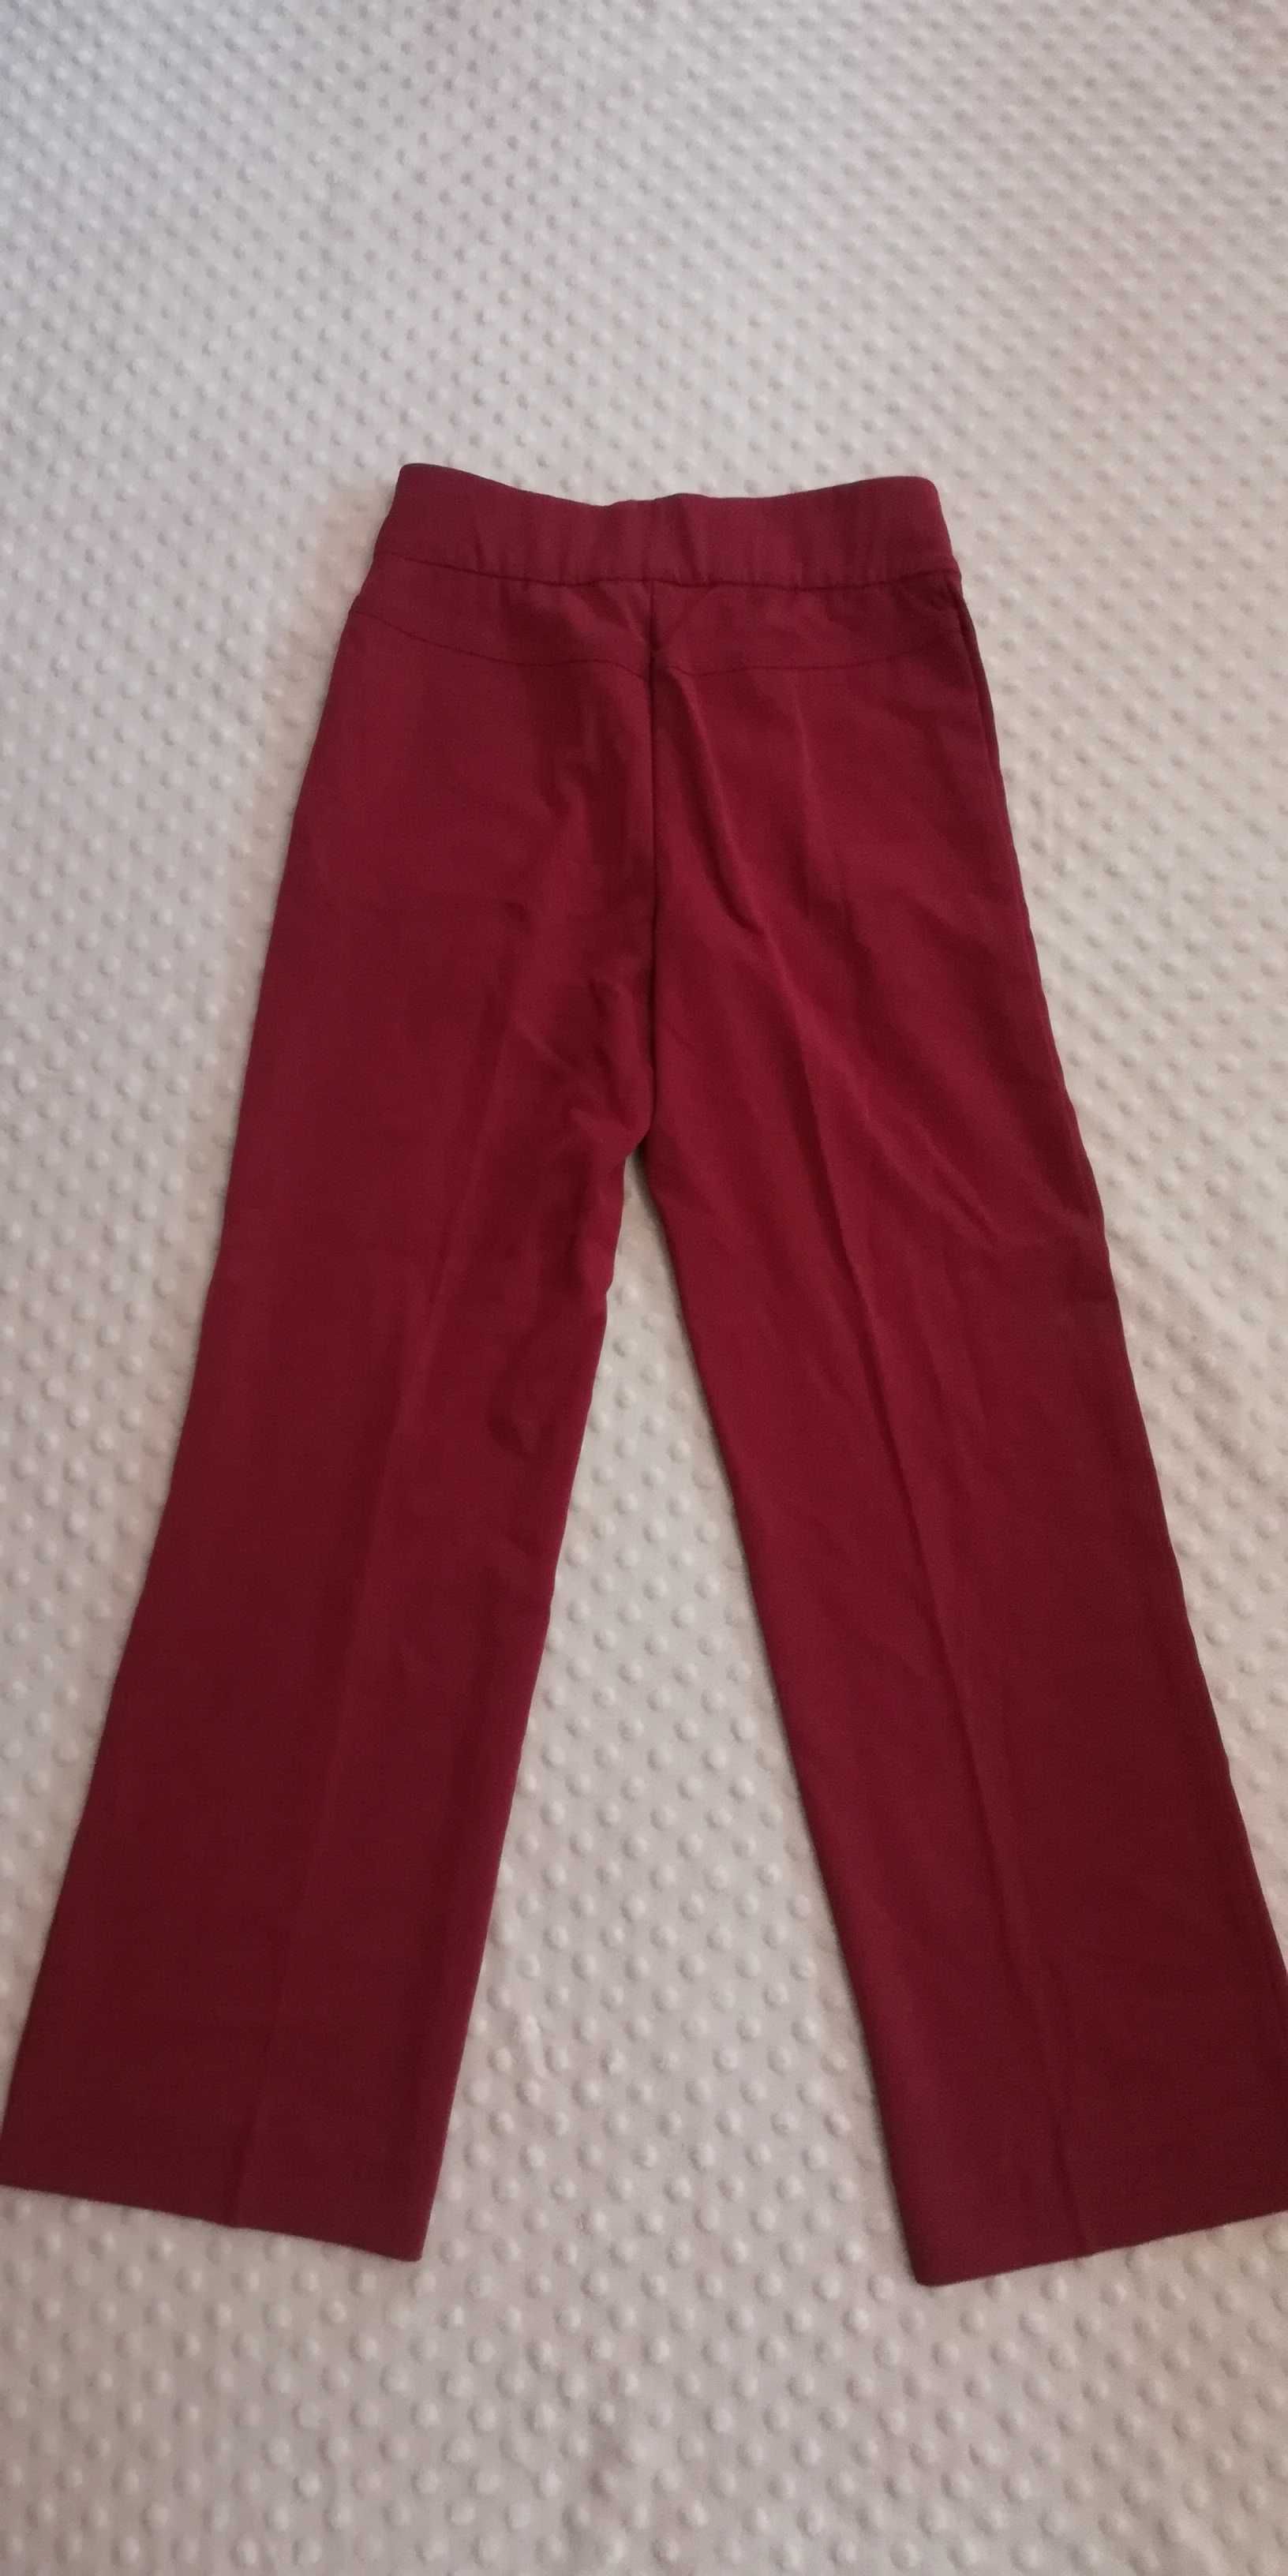 Spodnie Artigiano *nowe* bordowe w kant r. S 34